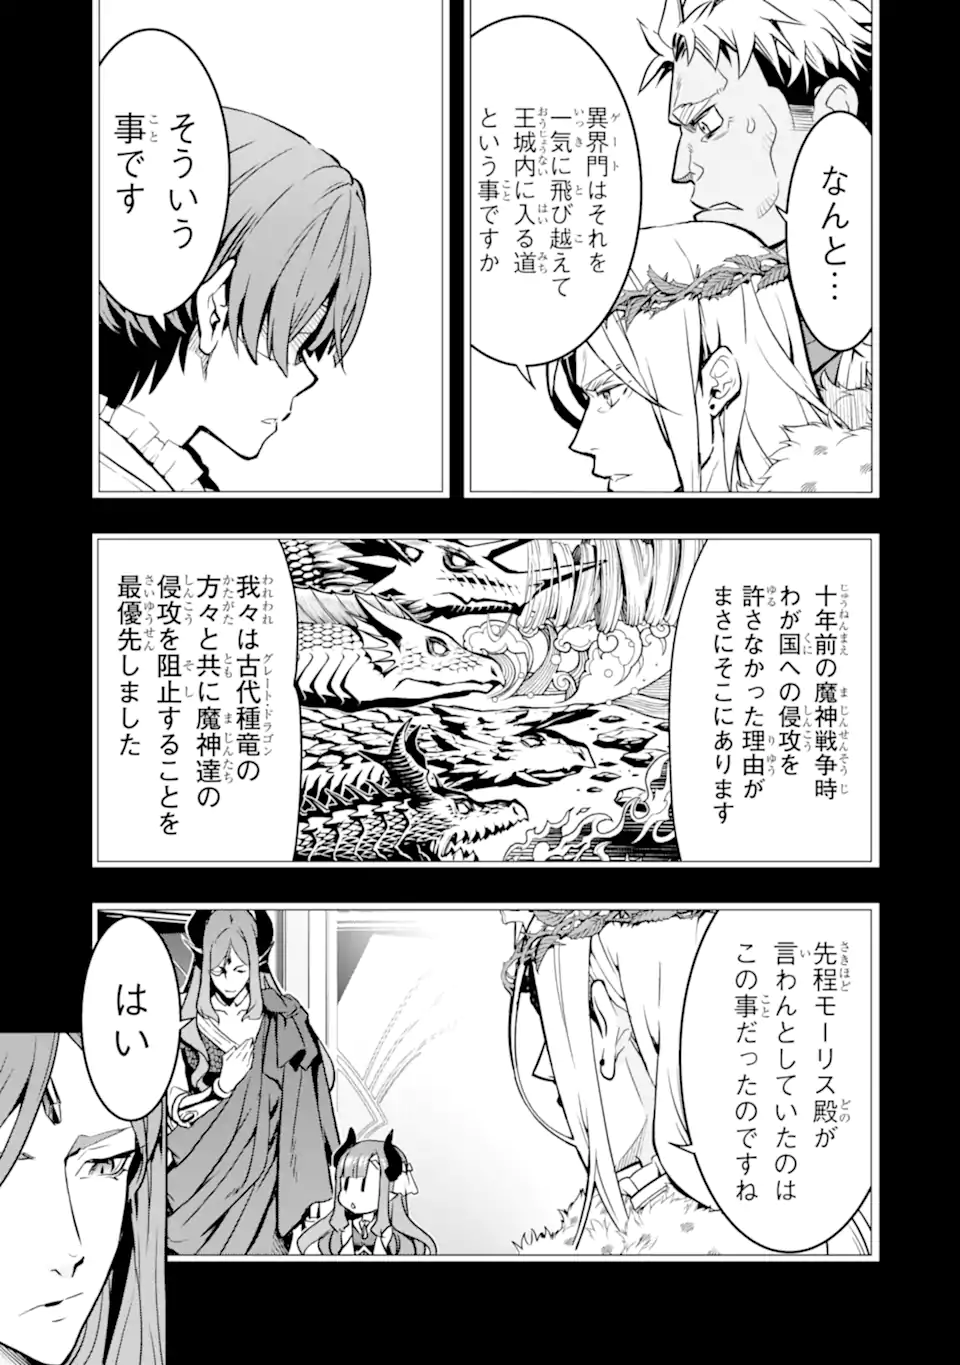 Koko wa Ore ni Makasete Saki ni Ike to Itte kara 10 Nen ga Tattara Densetsu ni Natteita - Chapter 37.2 - Page 2